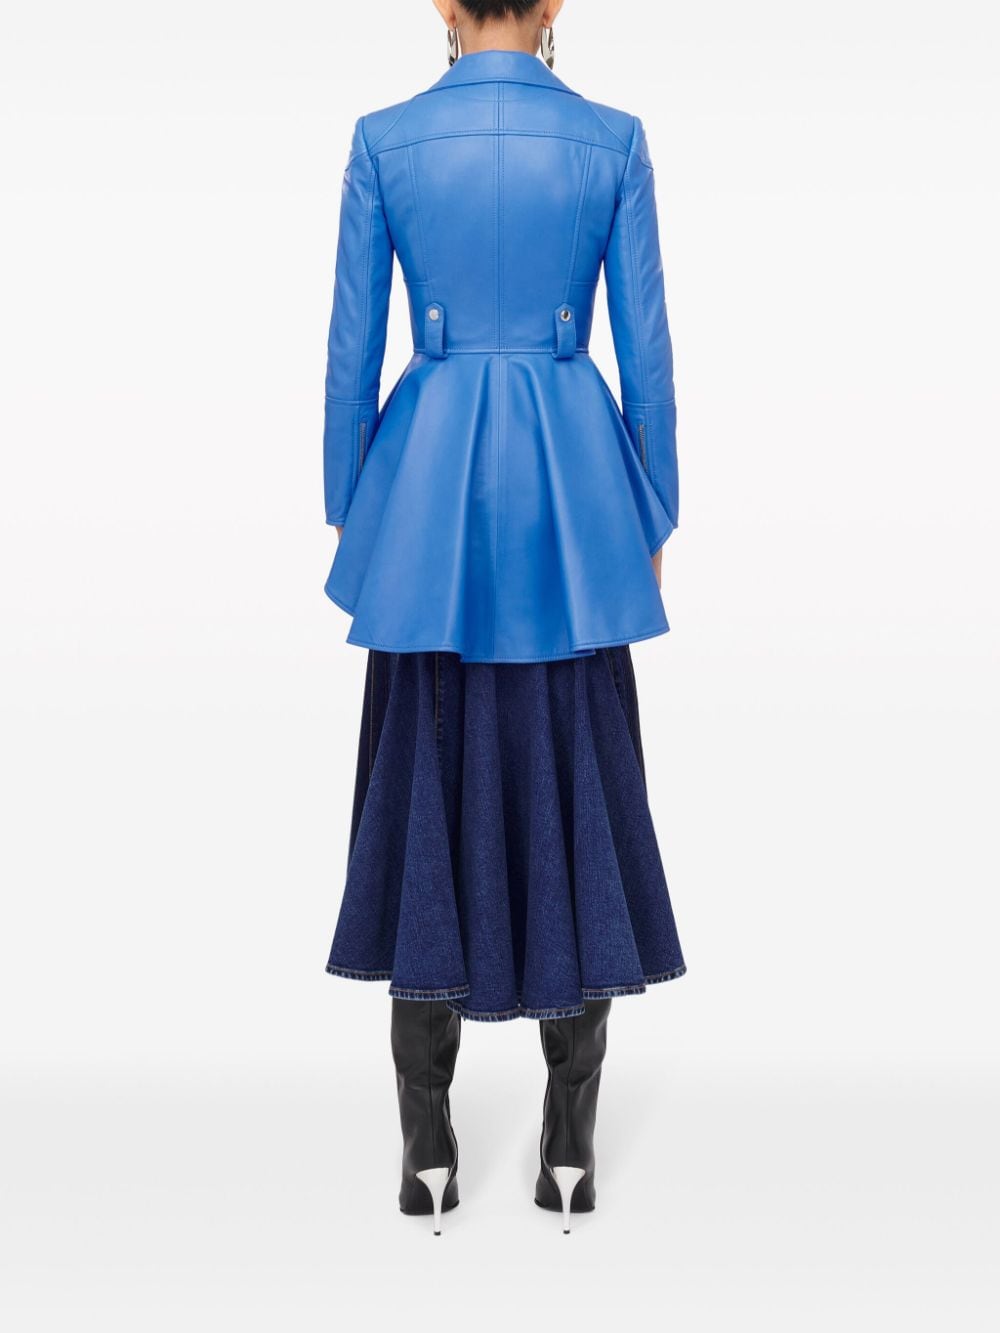 Shop Alexander Mcqueen Blue Denim High-waisted Midi Skirt For Women